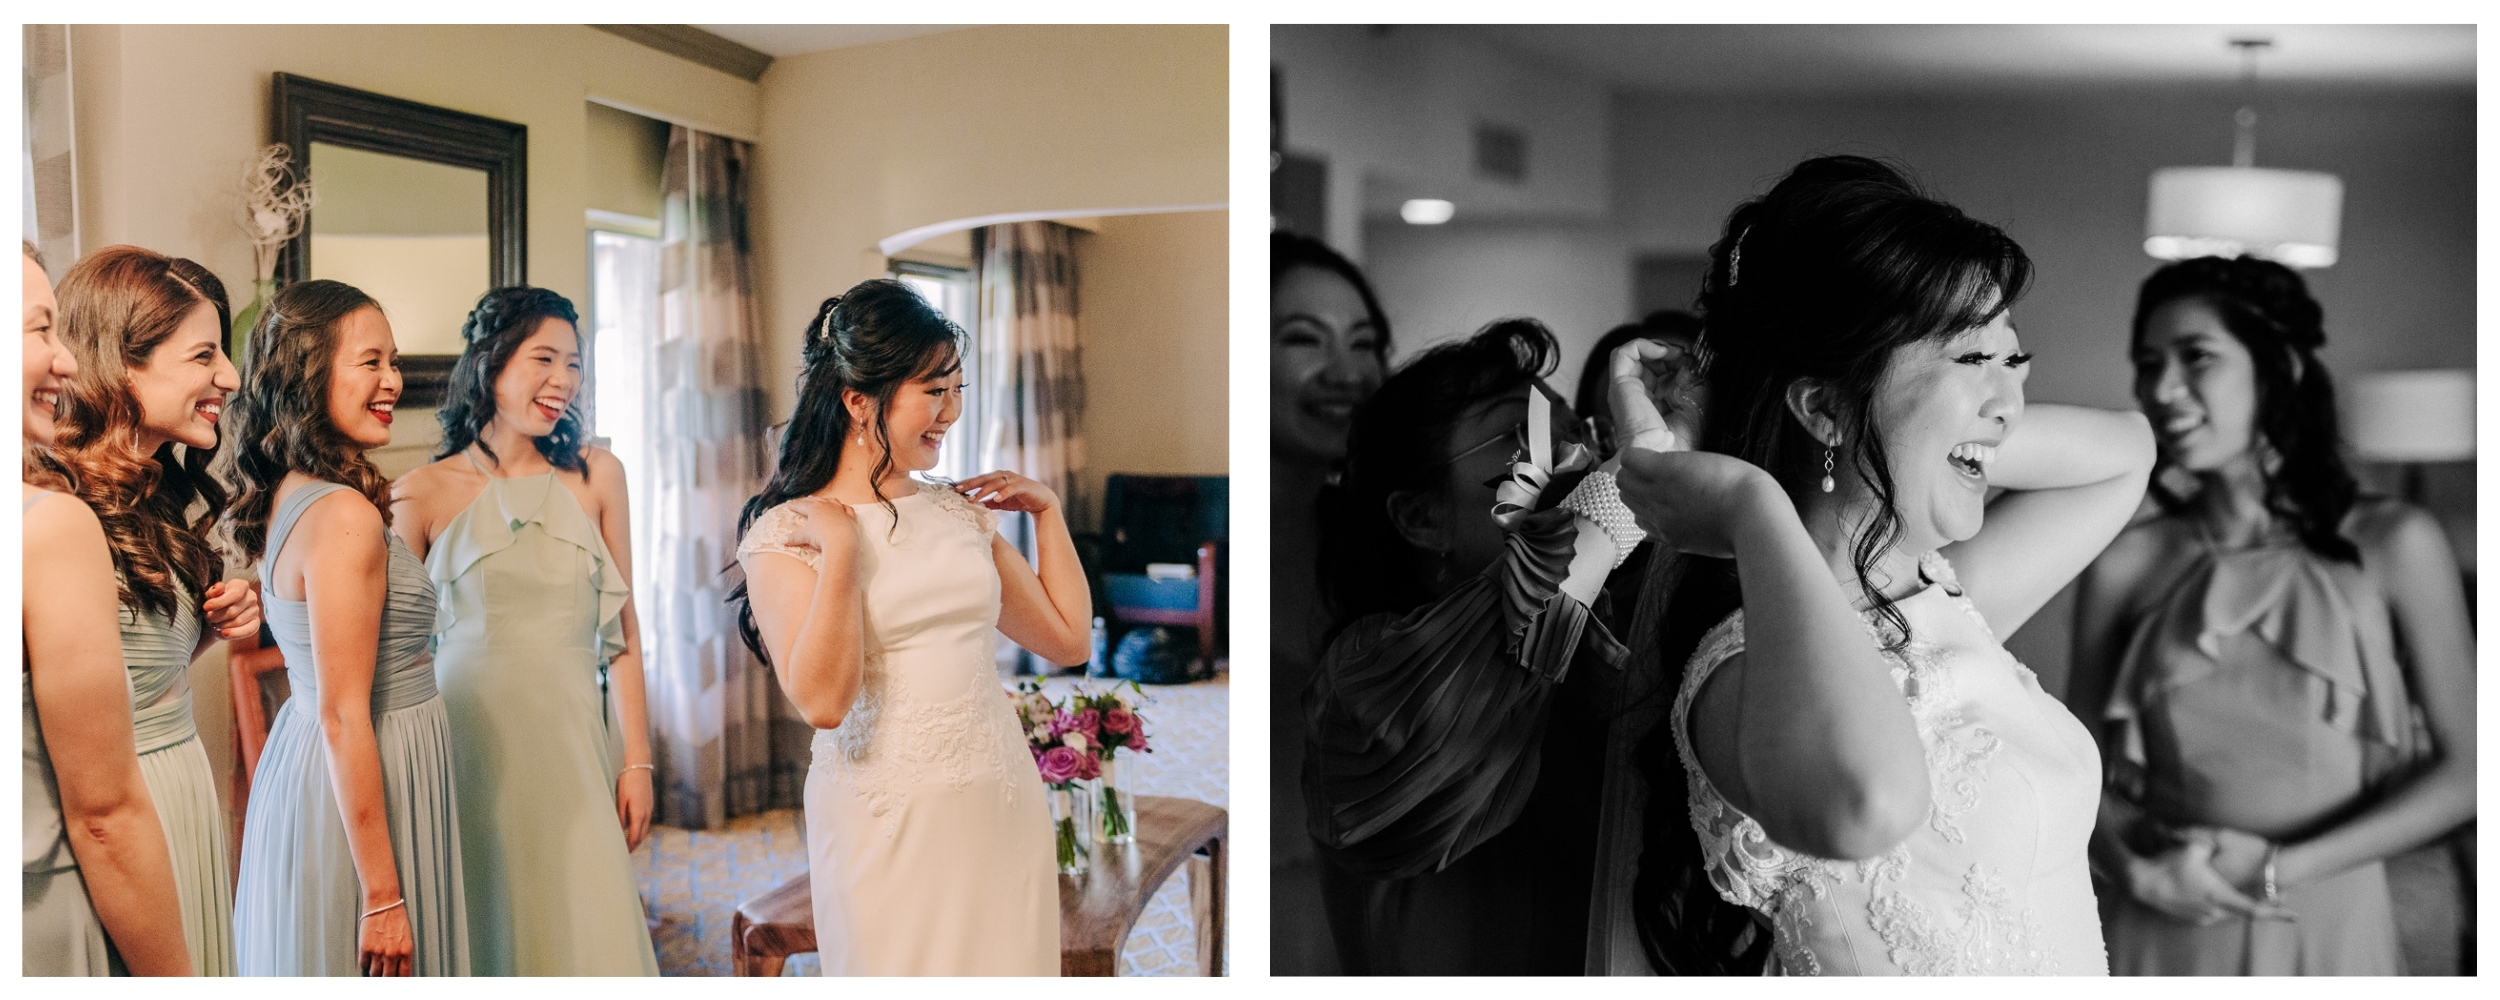 Hilton-El-Conquistador-Wedding---Tucson-Wedding-Photographer---Oro-Valley-Wedding-Photographer---Photographer-Near-Me---El-Conquistador-Resort-Wedding---Getting-Ready-Photos---Bridesmaids---Candid-Wedding-Photos---Bridal-Party-Getting-Ready-Photo-Ideas